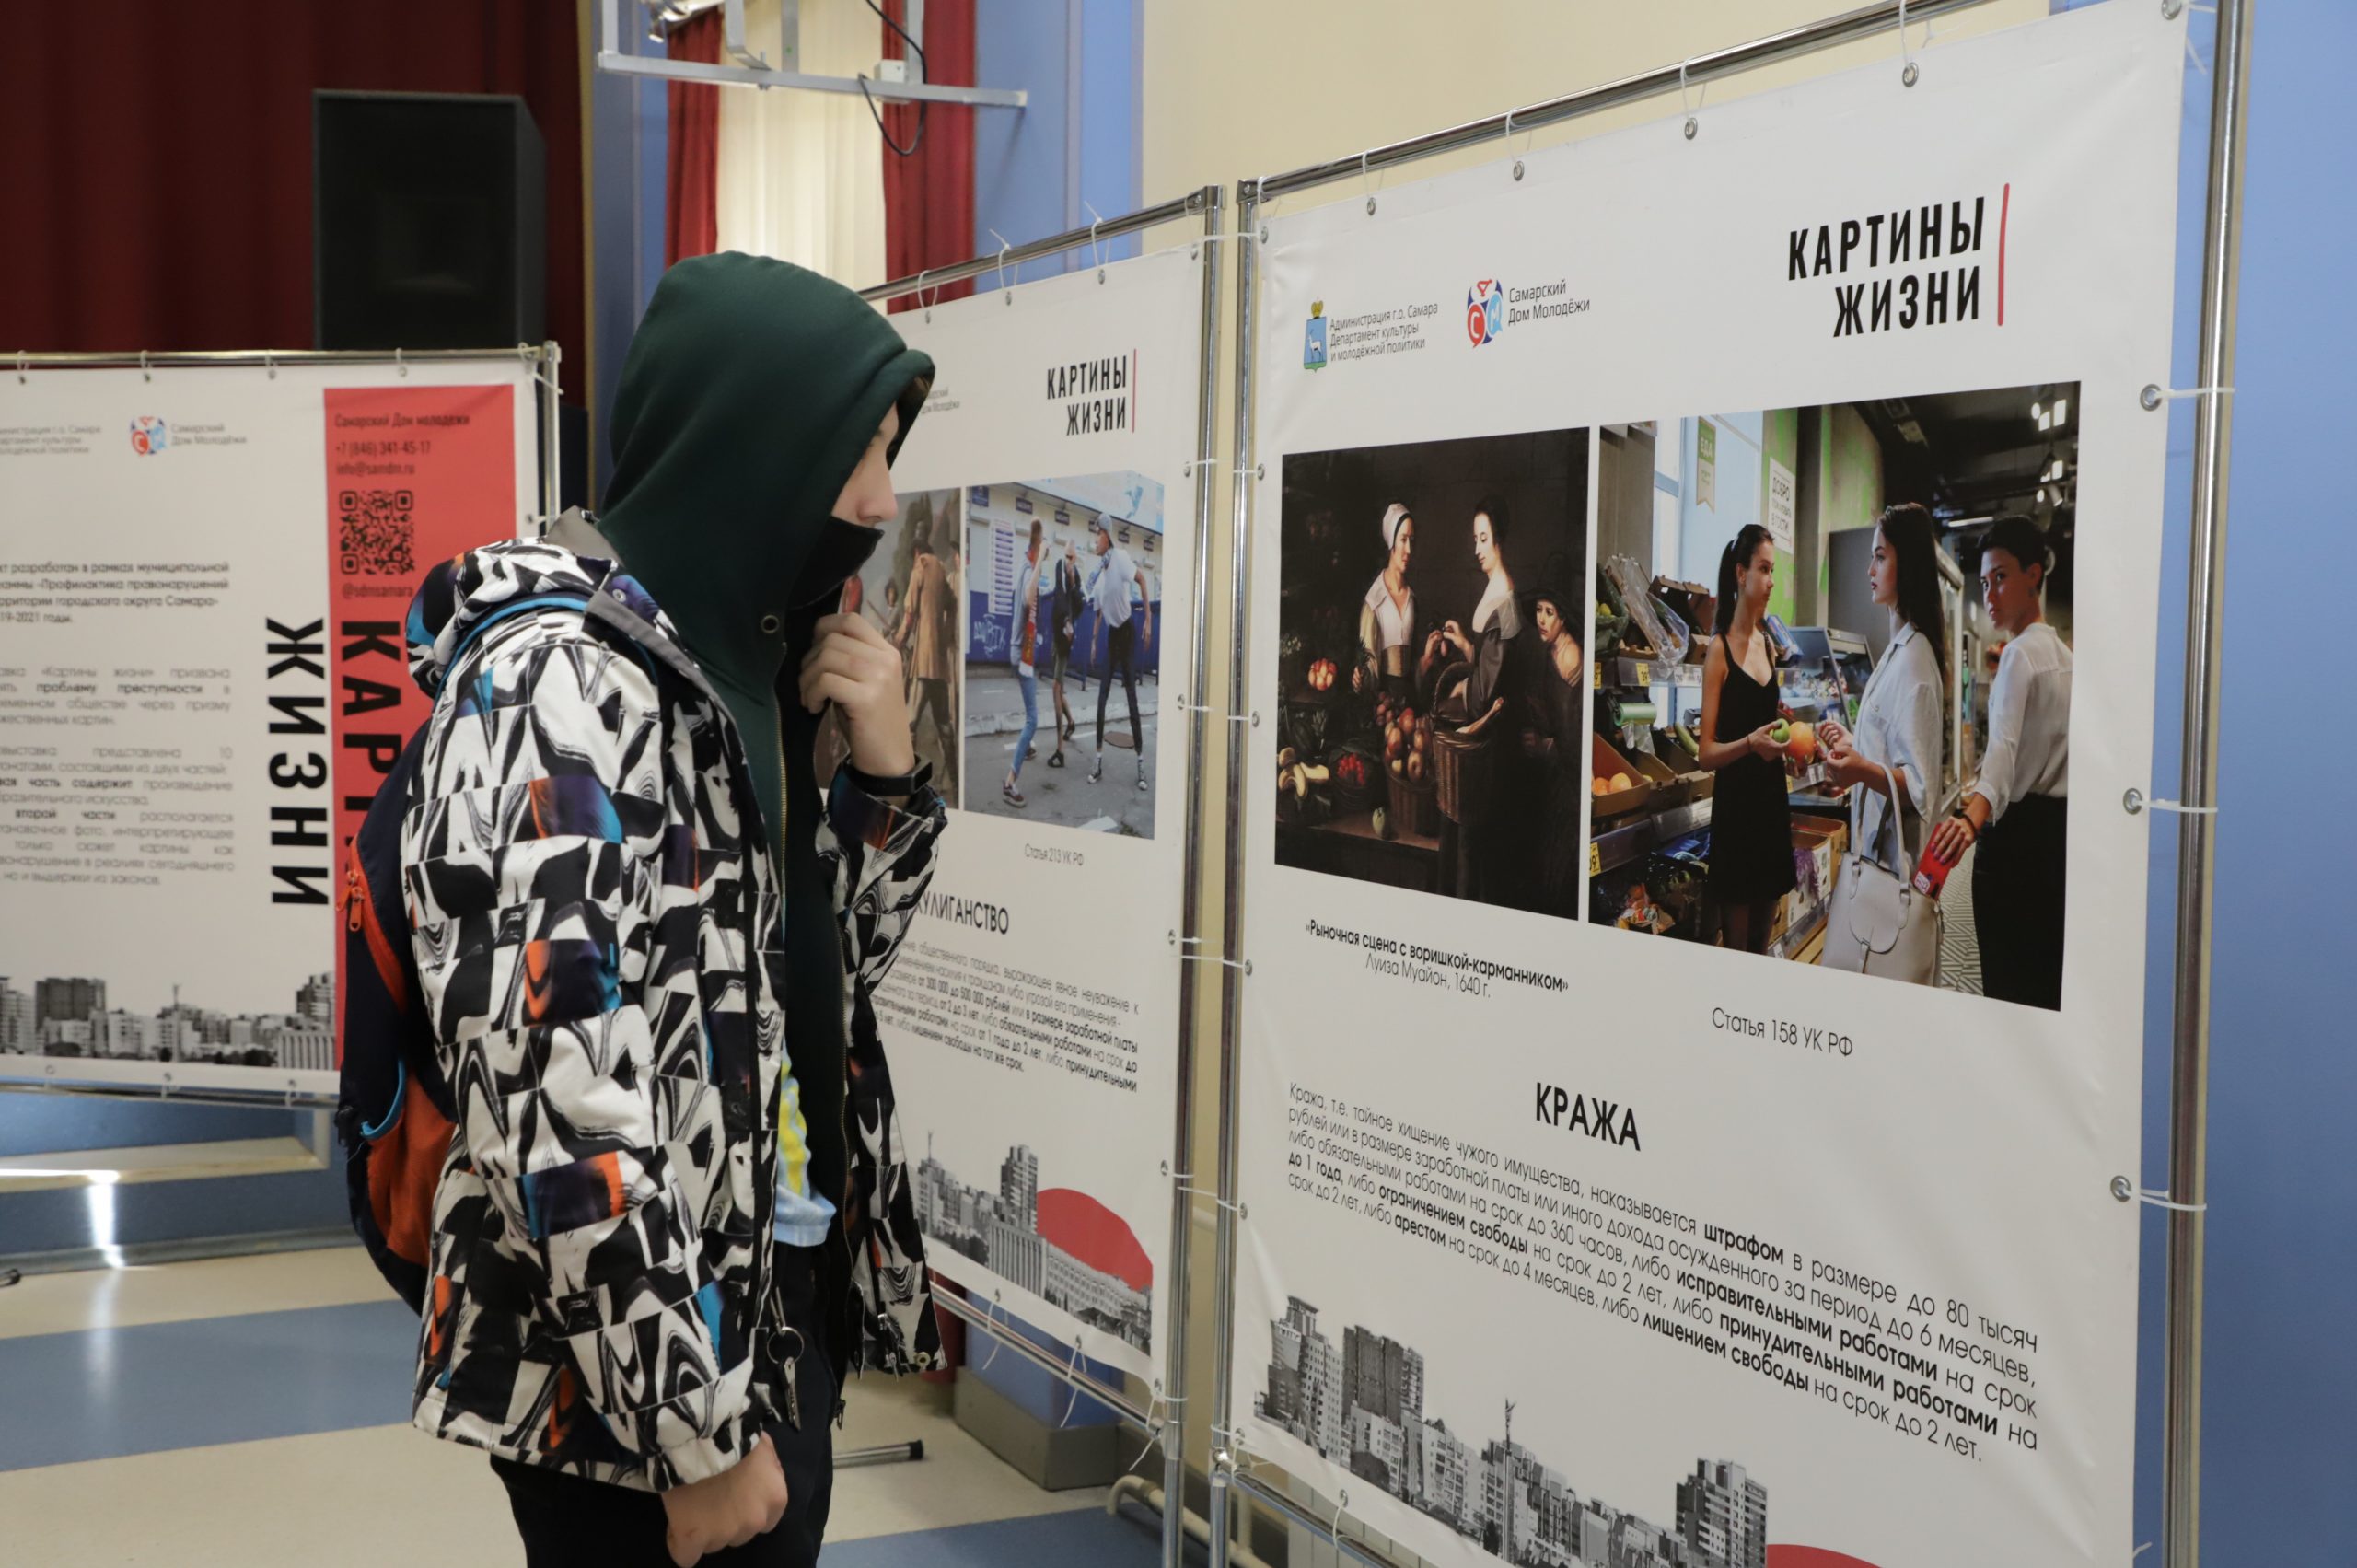 В учебных заведениях Самары презентуют выставку «Картины жизни». Она посвящена правонарушениям